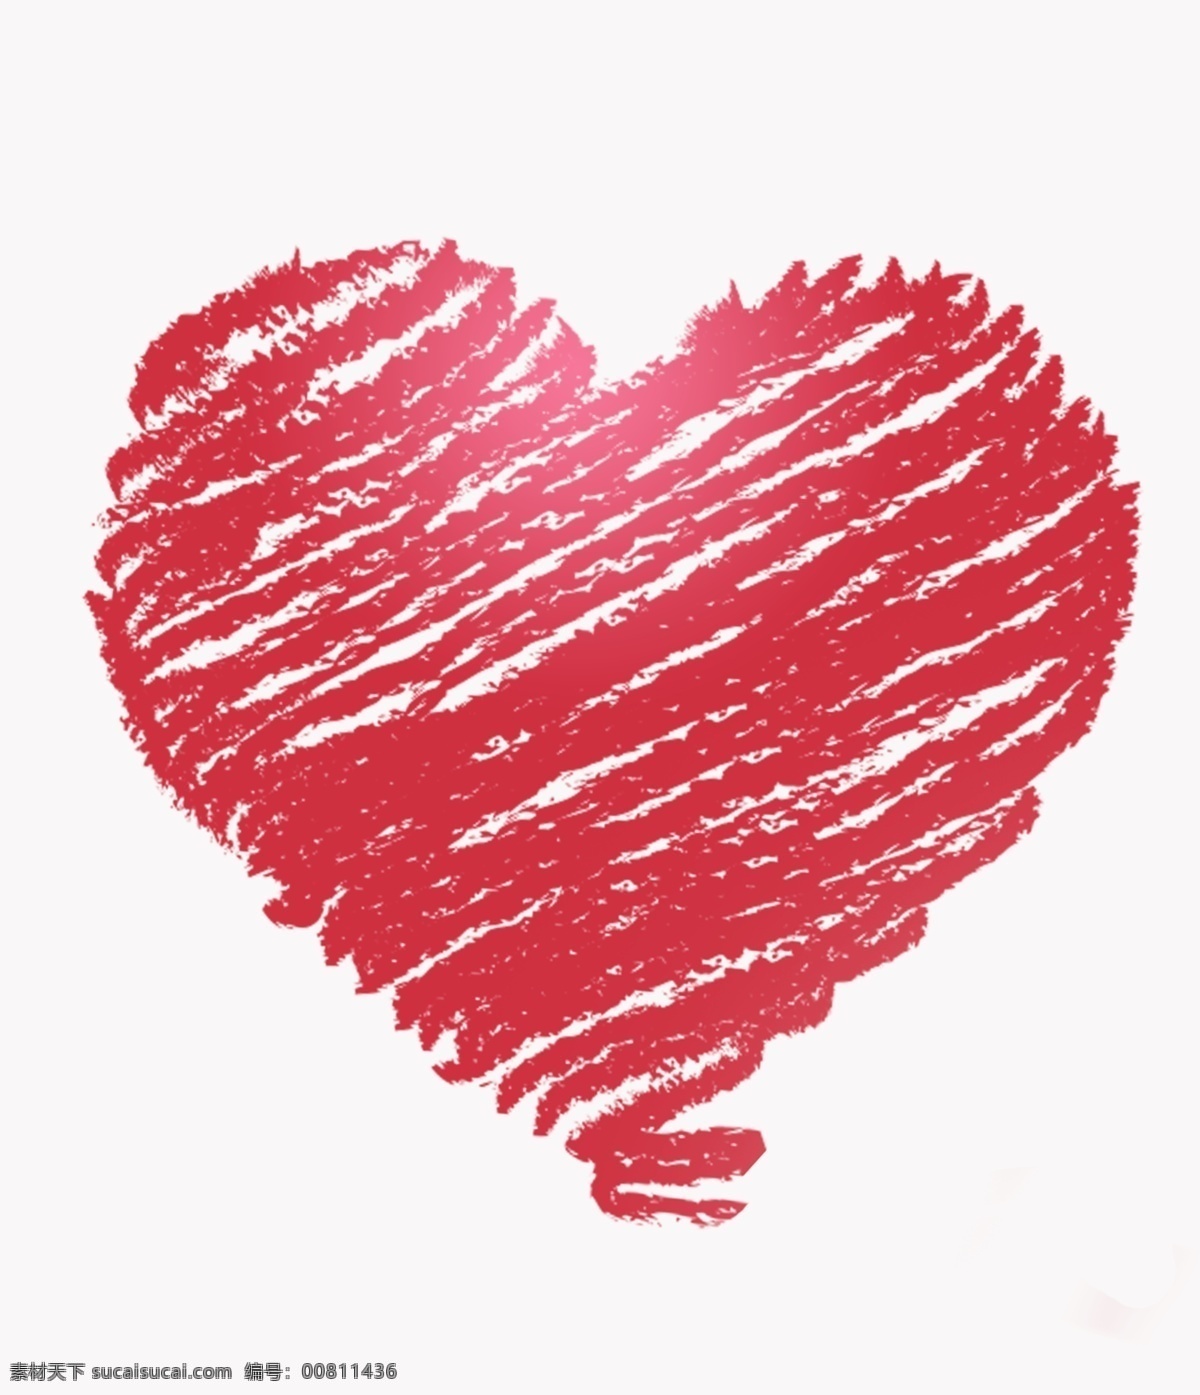 心 蜡笔画 心形装饰 红色 标识 底纹边框 条纹线条